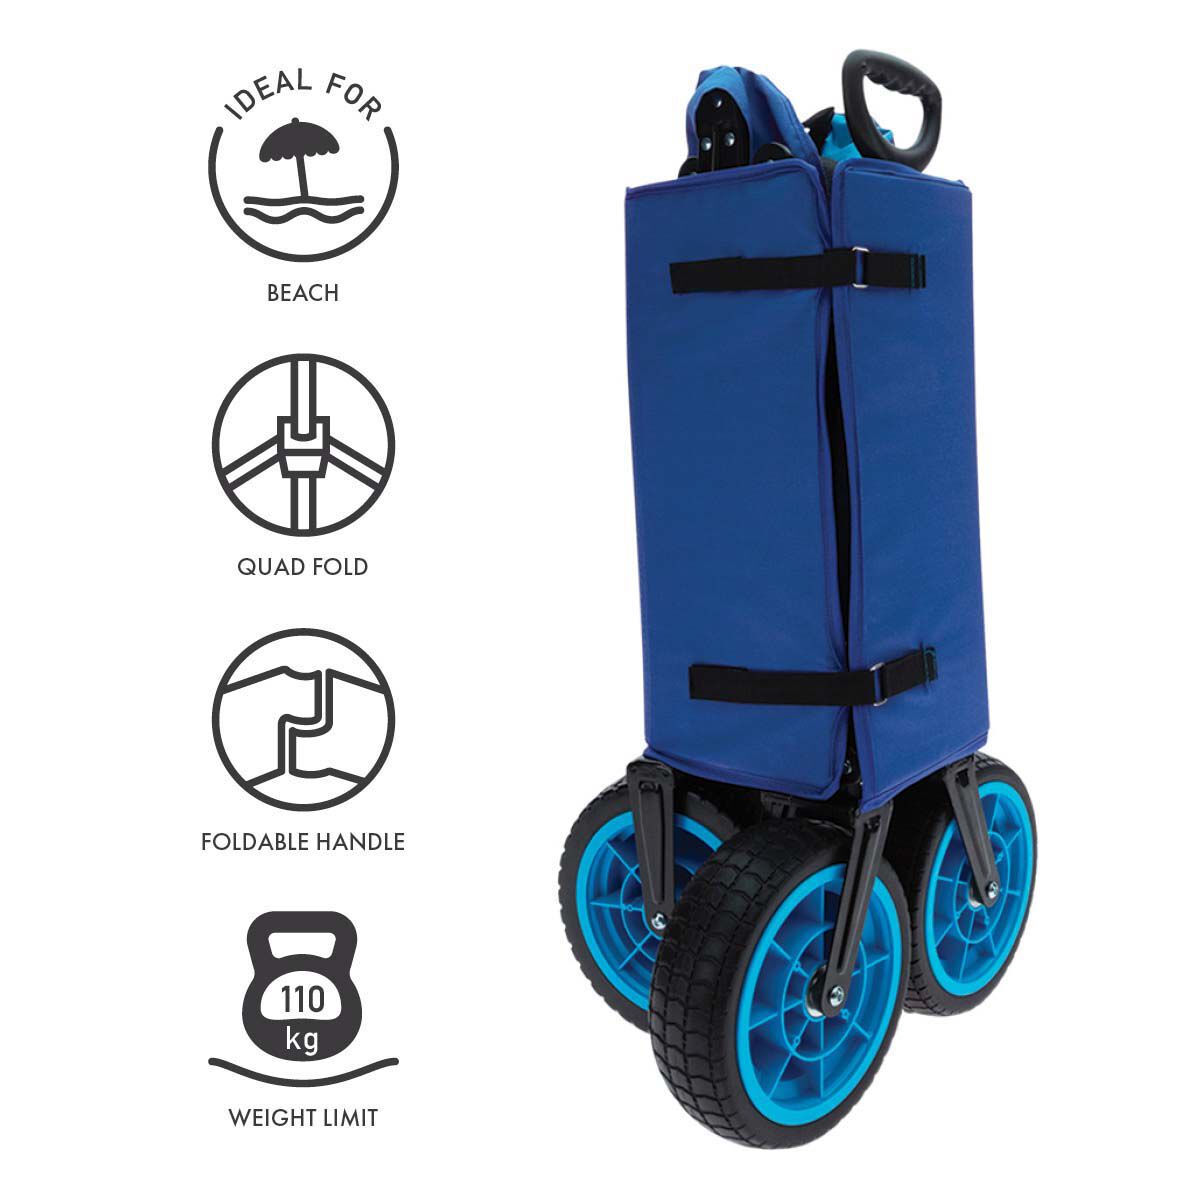 Beach Trolley, Beach Cart, Beach Wagon for Sale Australia